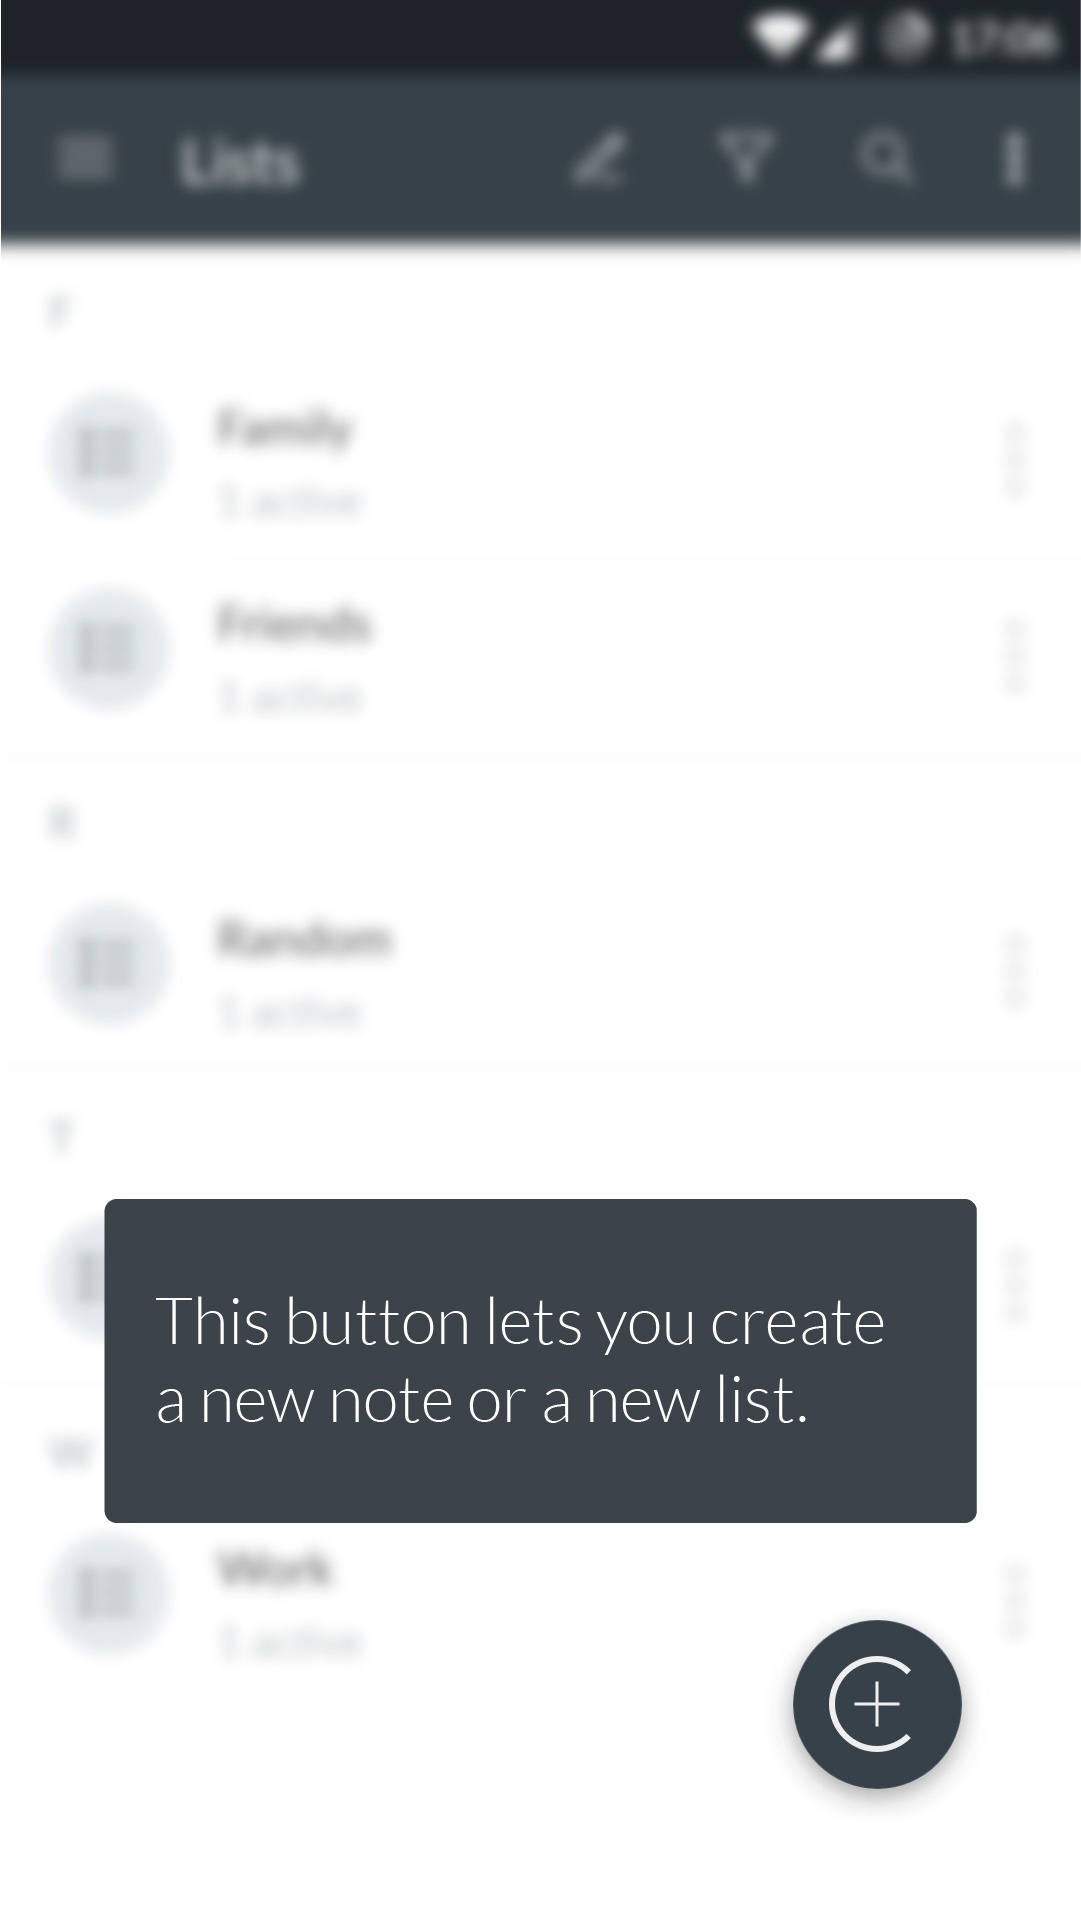 Ecran de l'application, indiquant le bouton qui permet de créer une note ou une liste.